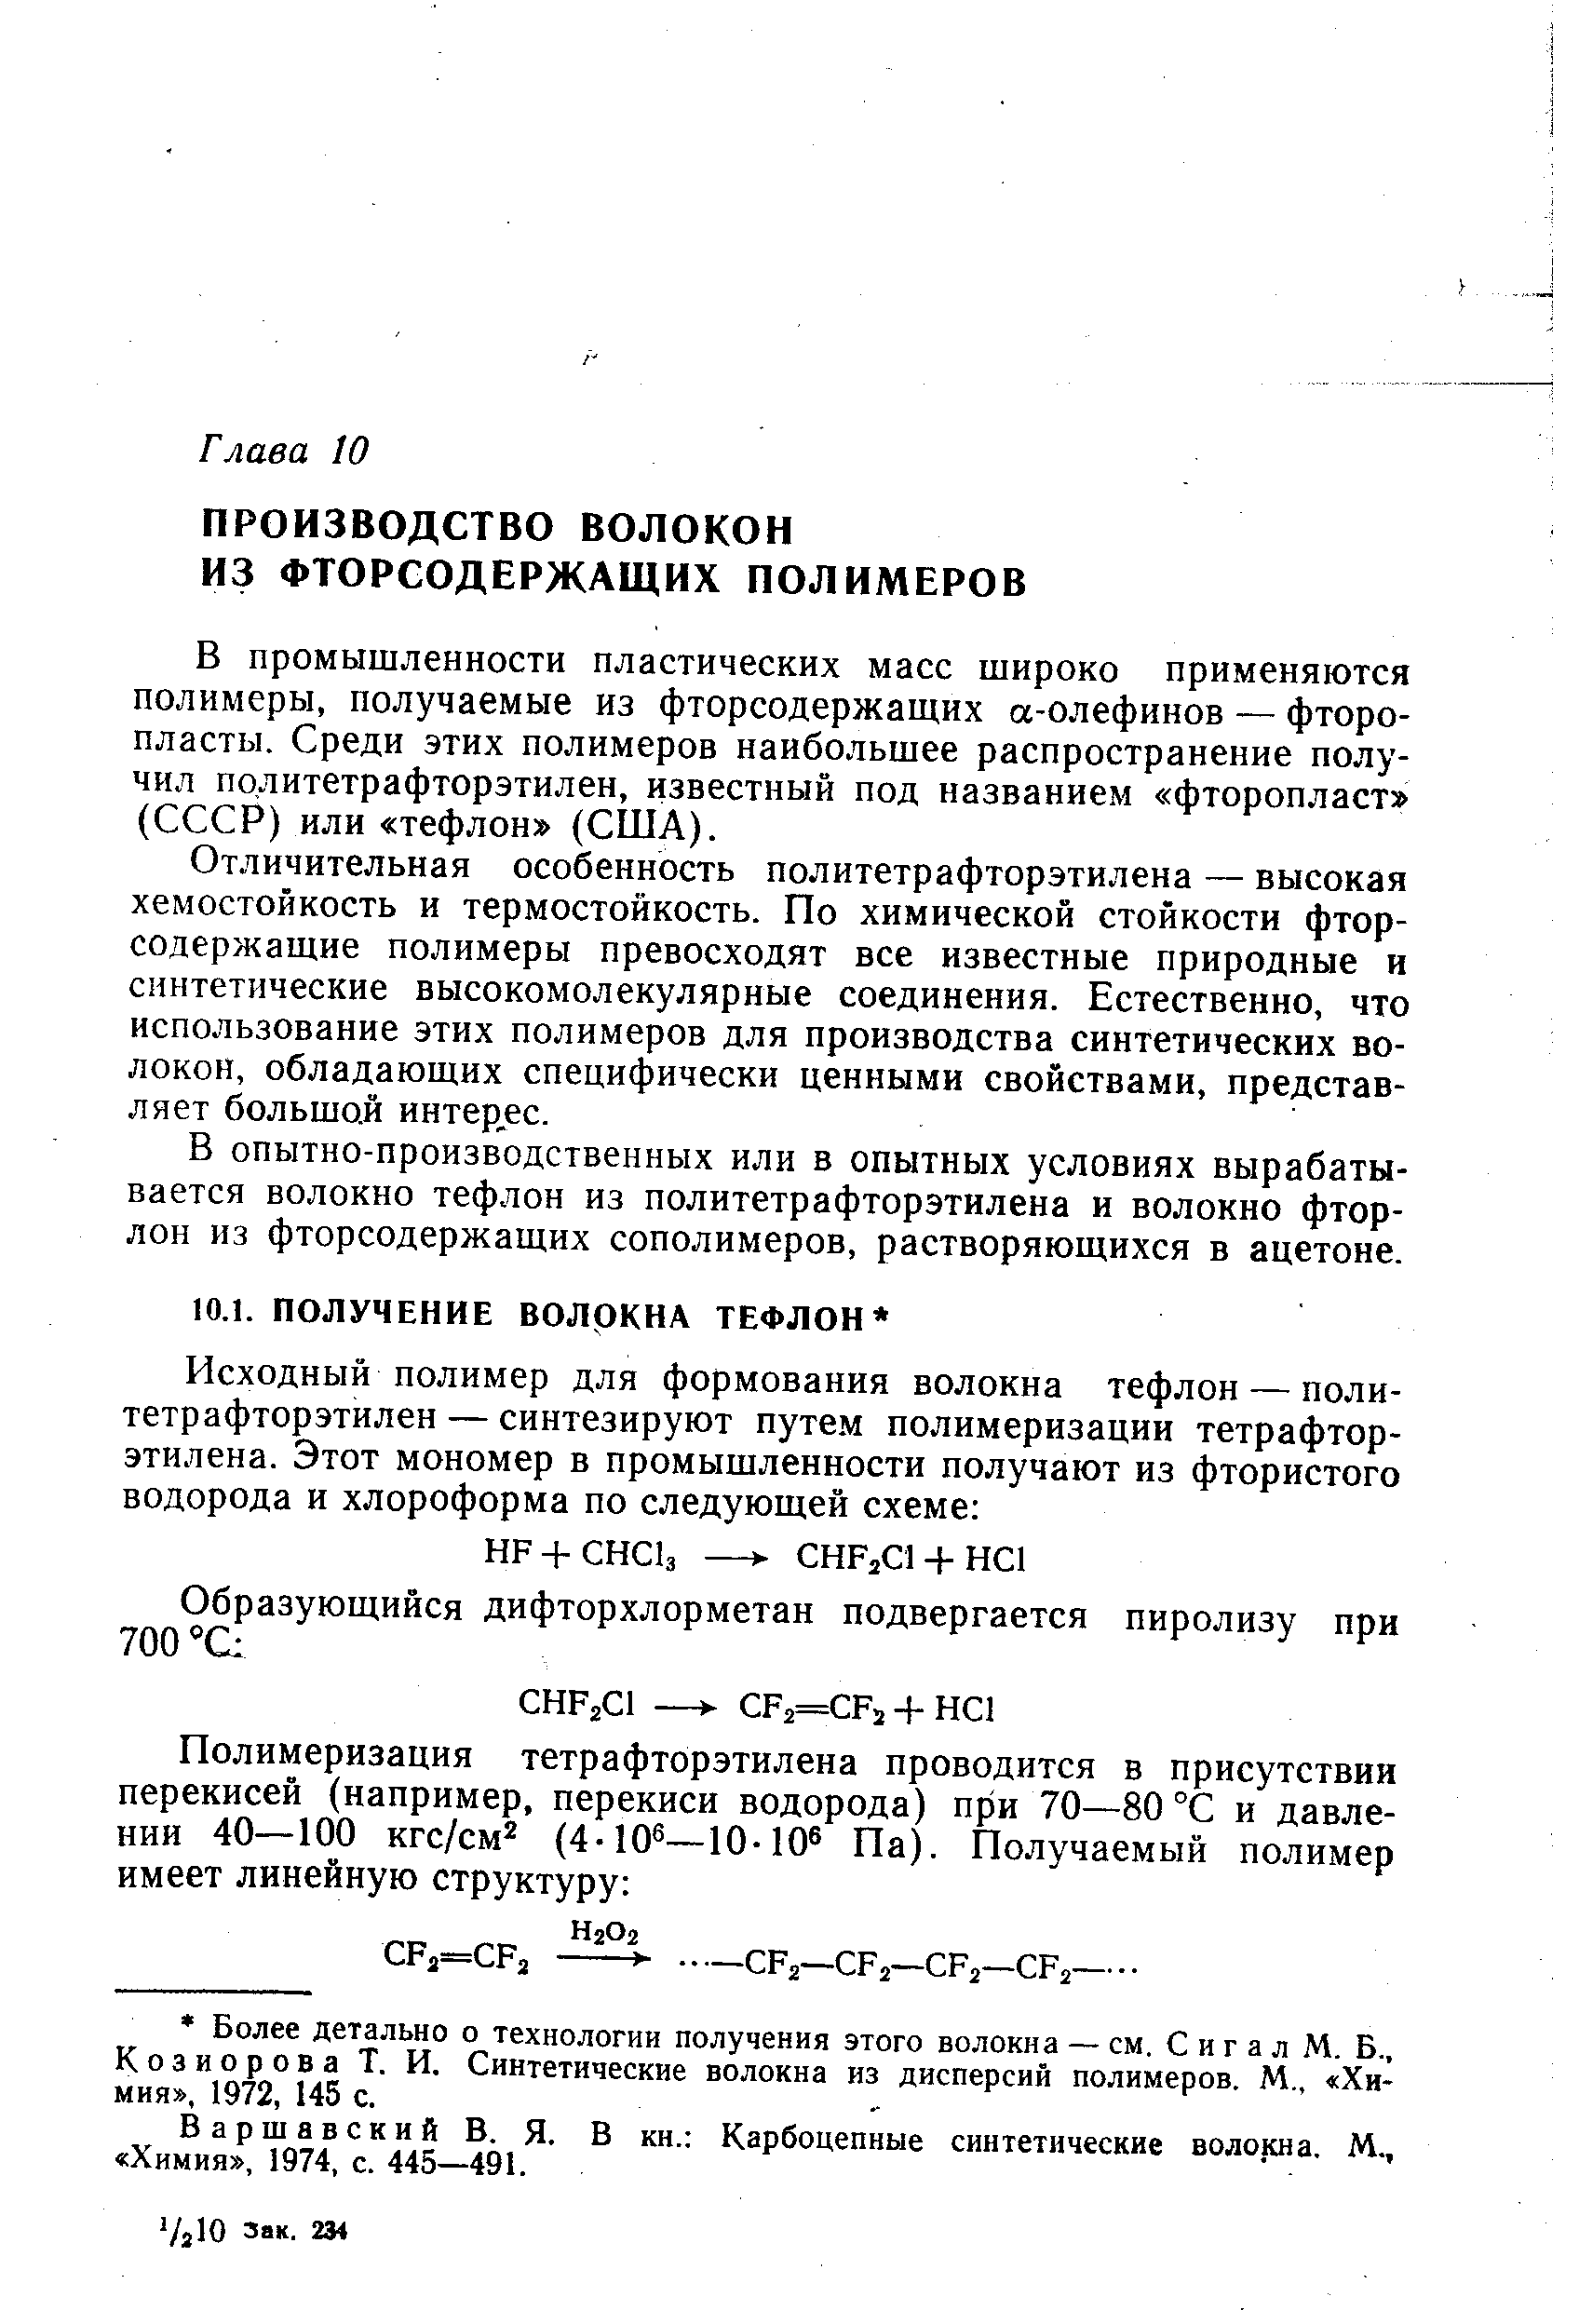 Варшавский В. Я. В кн. Карбоцепные синтетические волокна. М., Химия , 1974, с. 445—491.